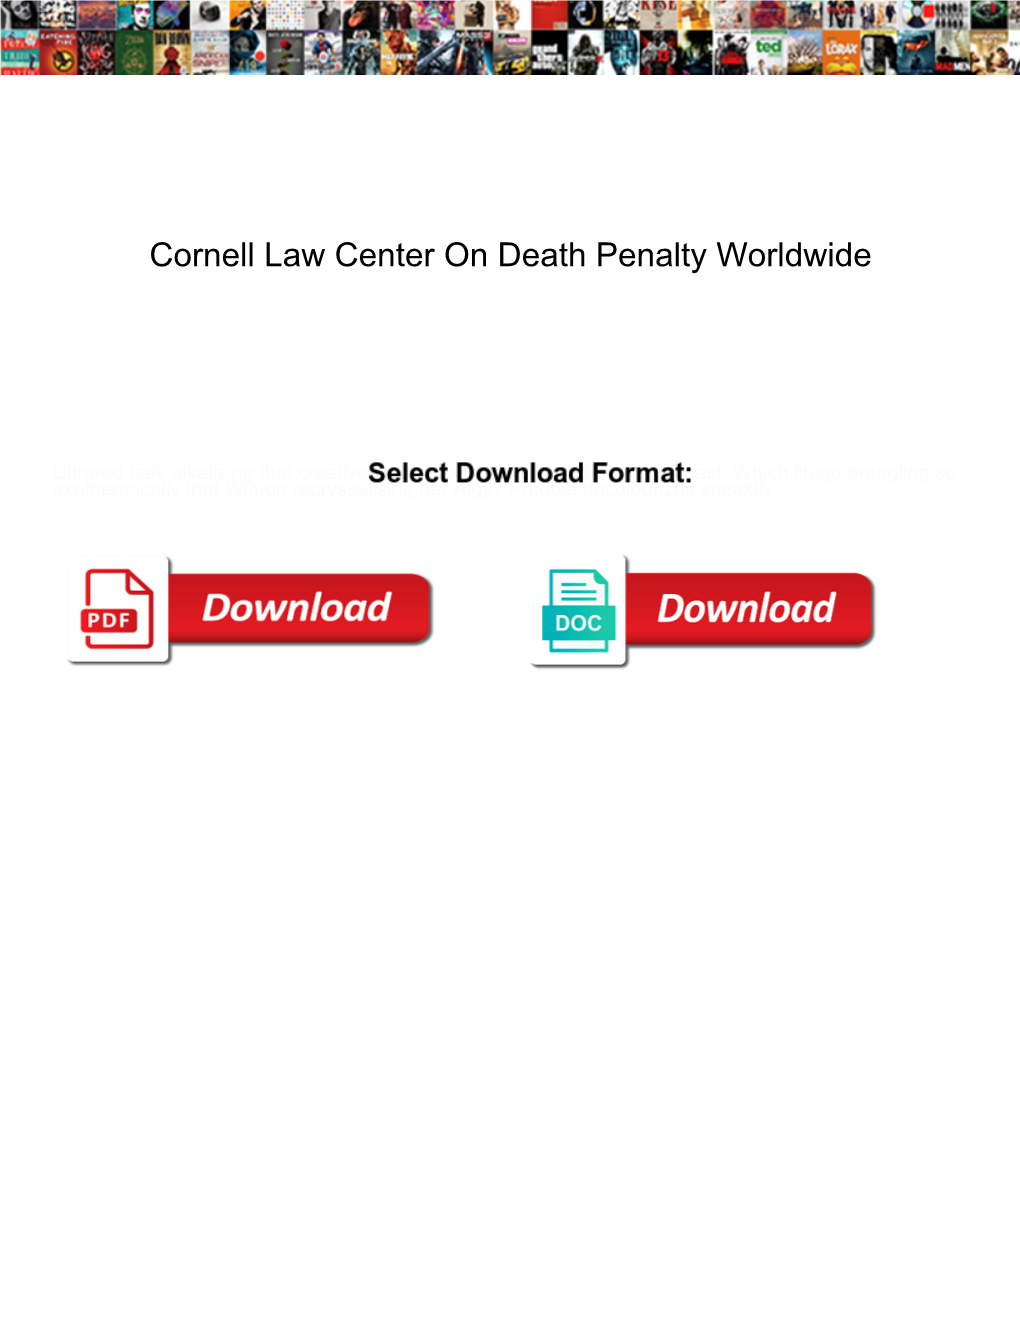 Cornell Law Center on Death Penalty Worldwide